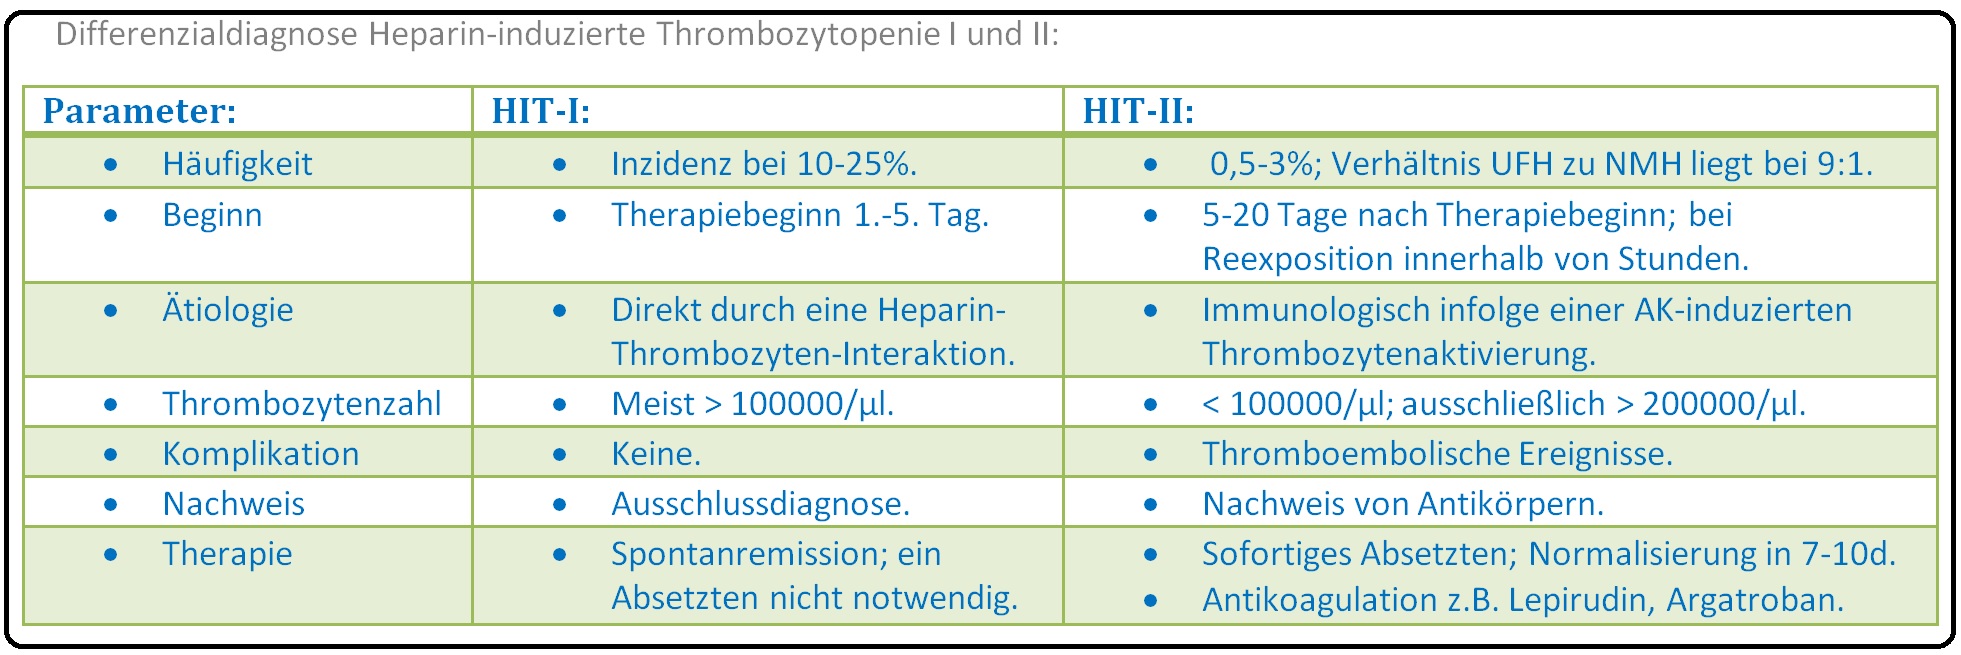 496 Differenzialdiagnose Heparin induzierte Thrombozytopenie I und II